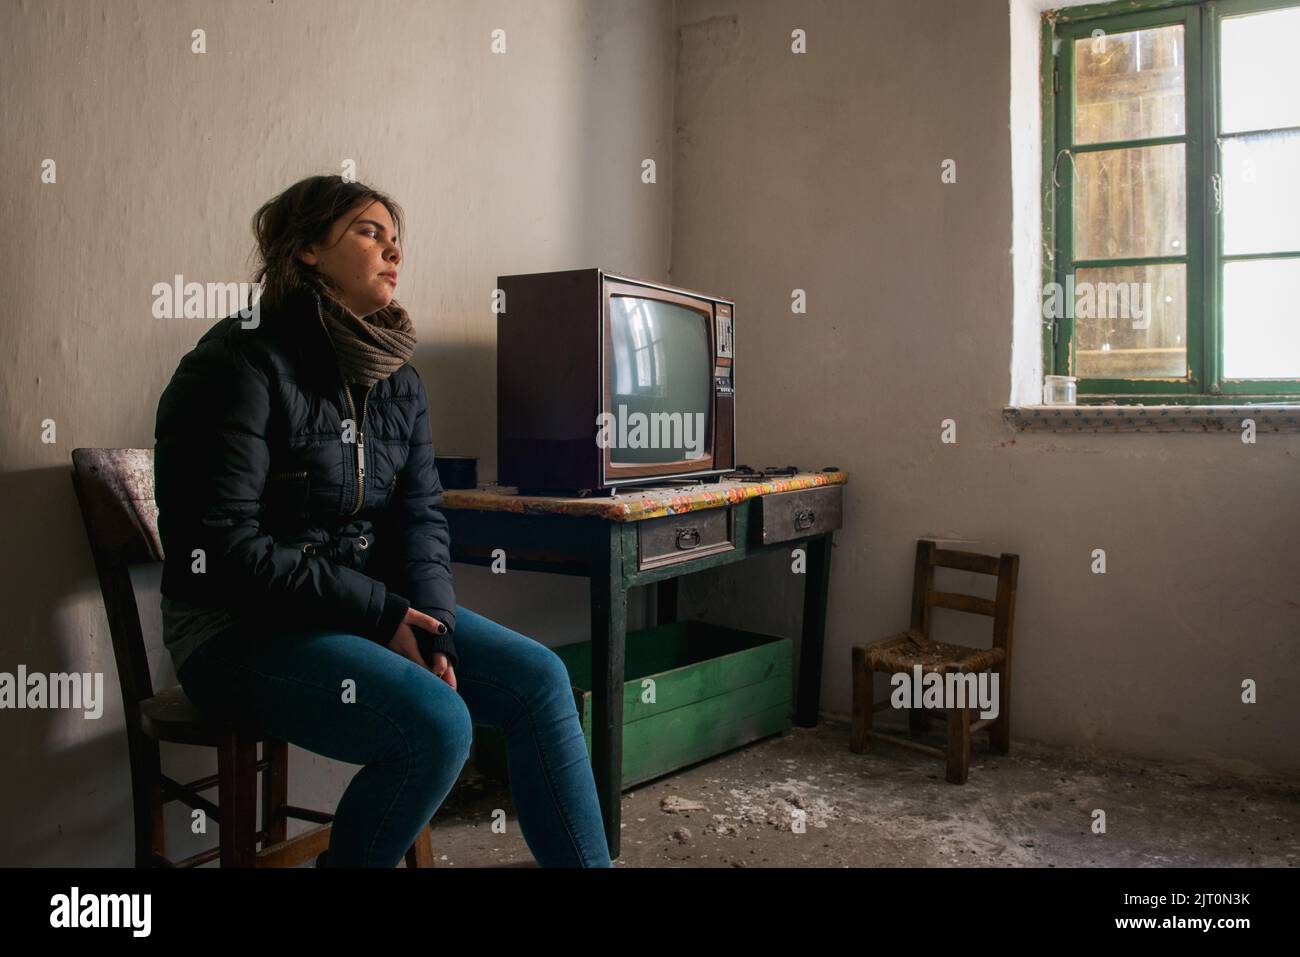 Giovane donna sola in una stanza abbandonata in rovina con televisione. Concetto di solitudine Foto Stock